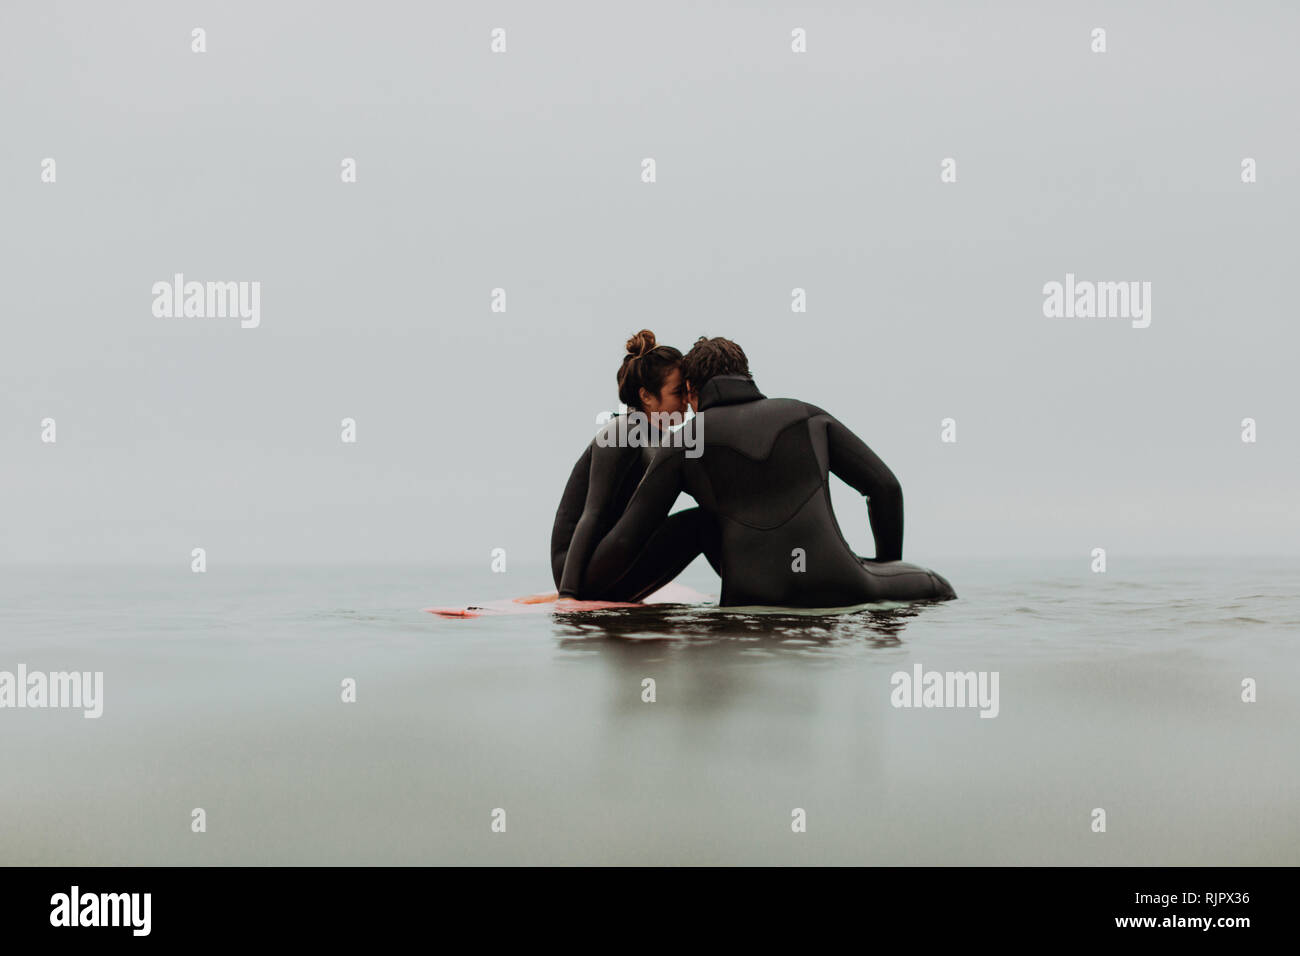 Junge surfen Paar auf Surfboards sitzen in Ruhe misty Sea, Ventura, Kalifornien, USA Stockfoto